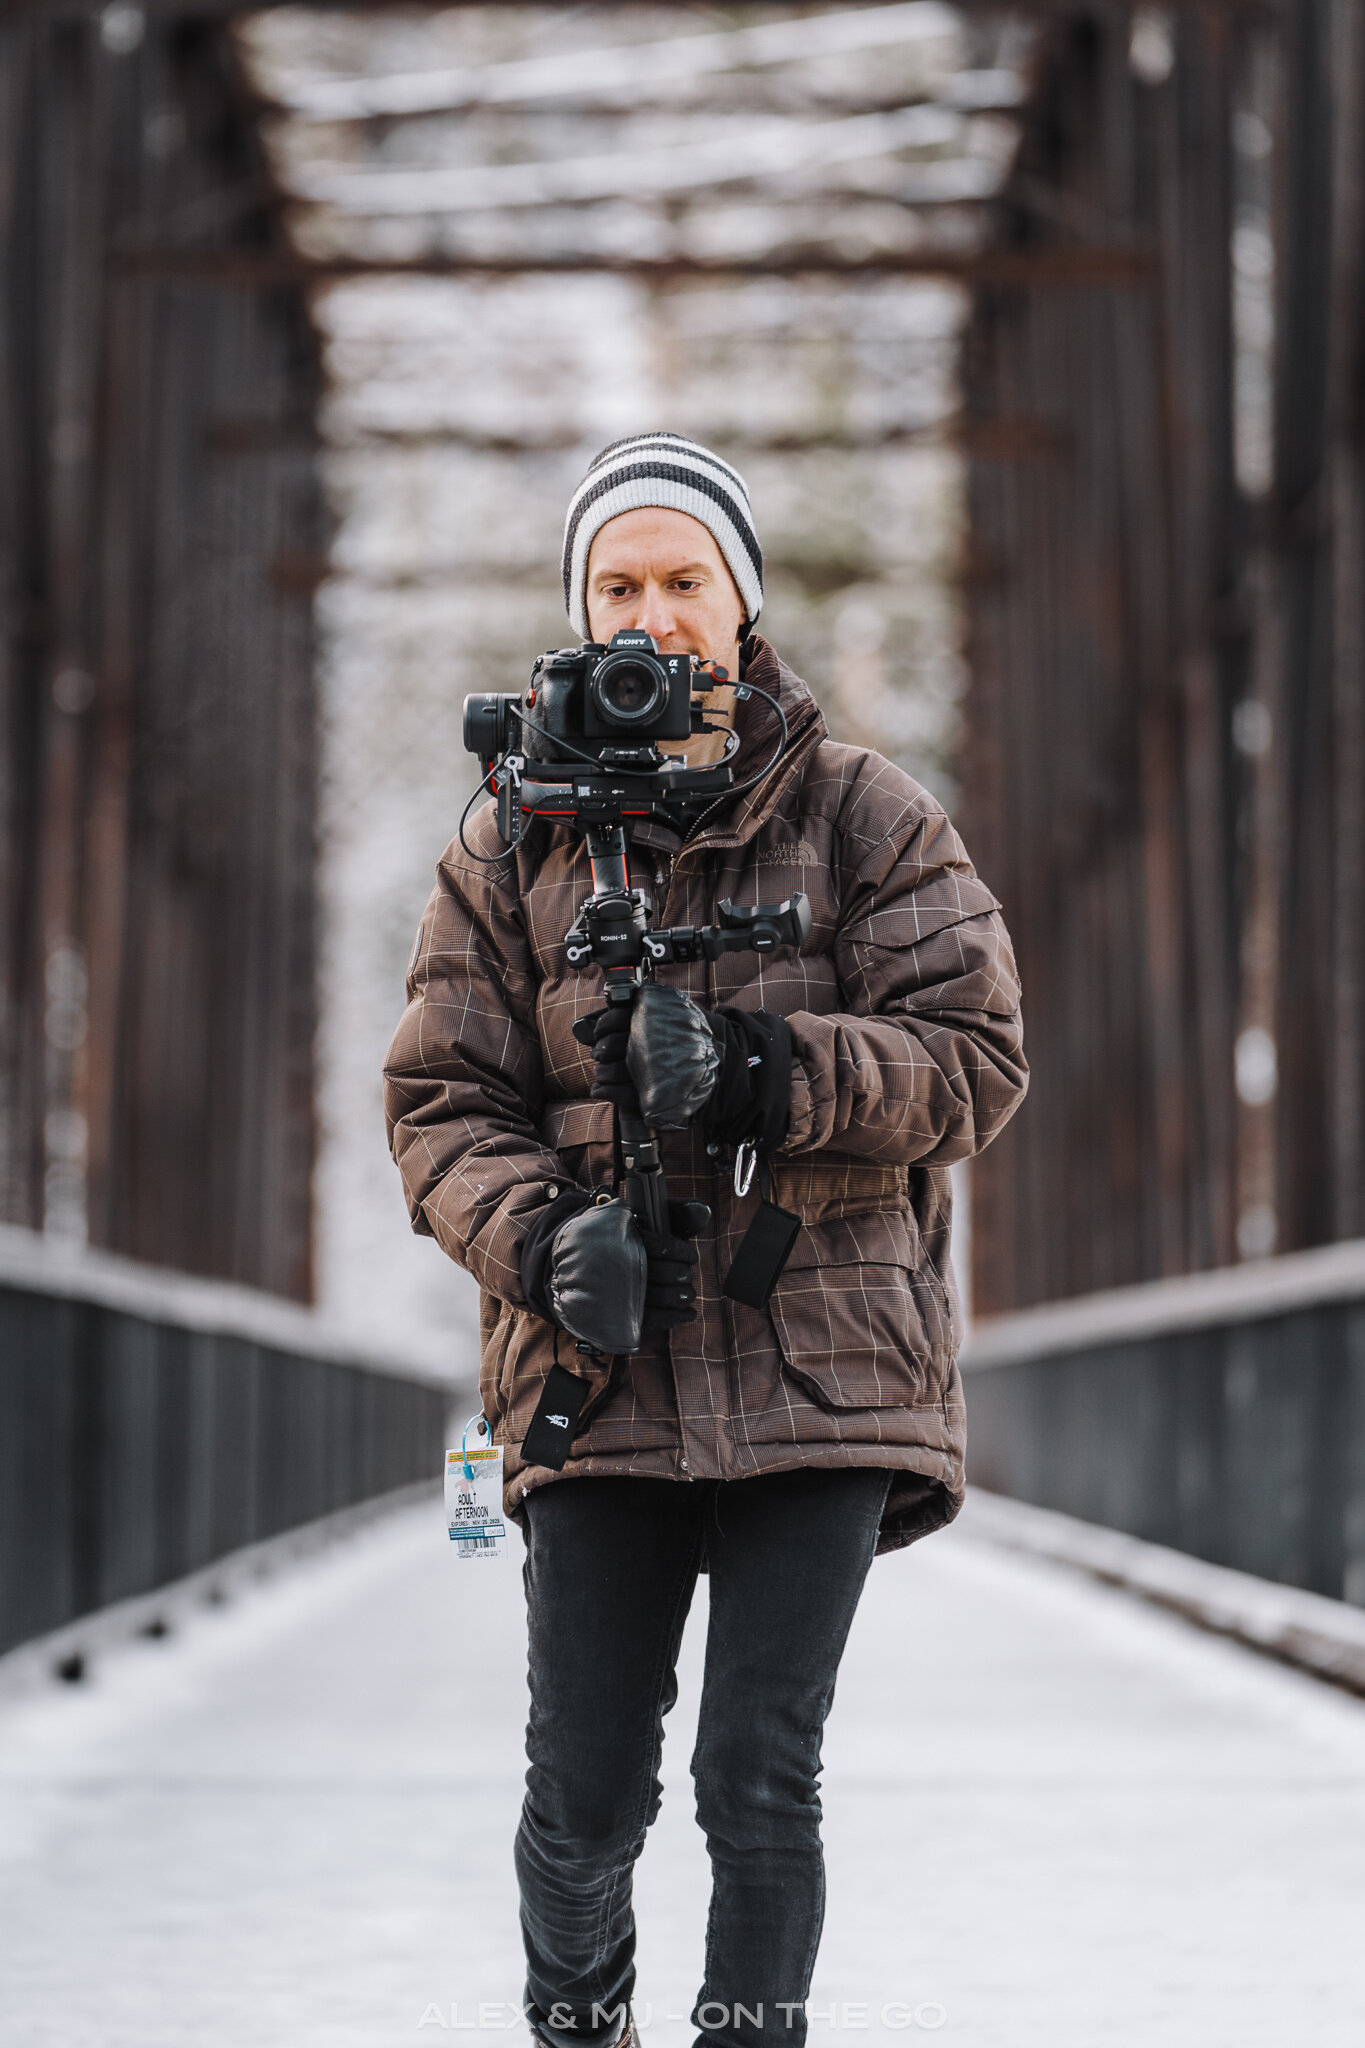 Photographier au froid: gants pour photographe